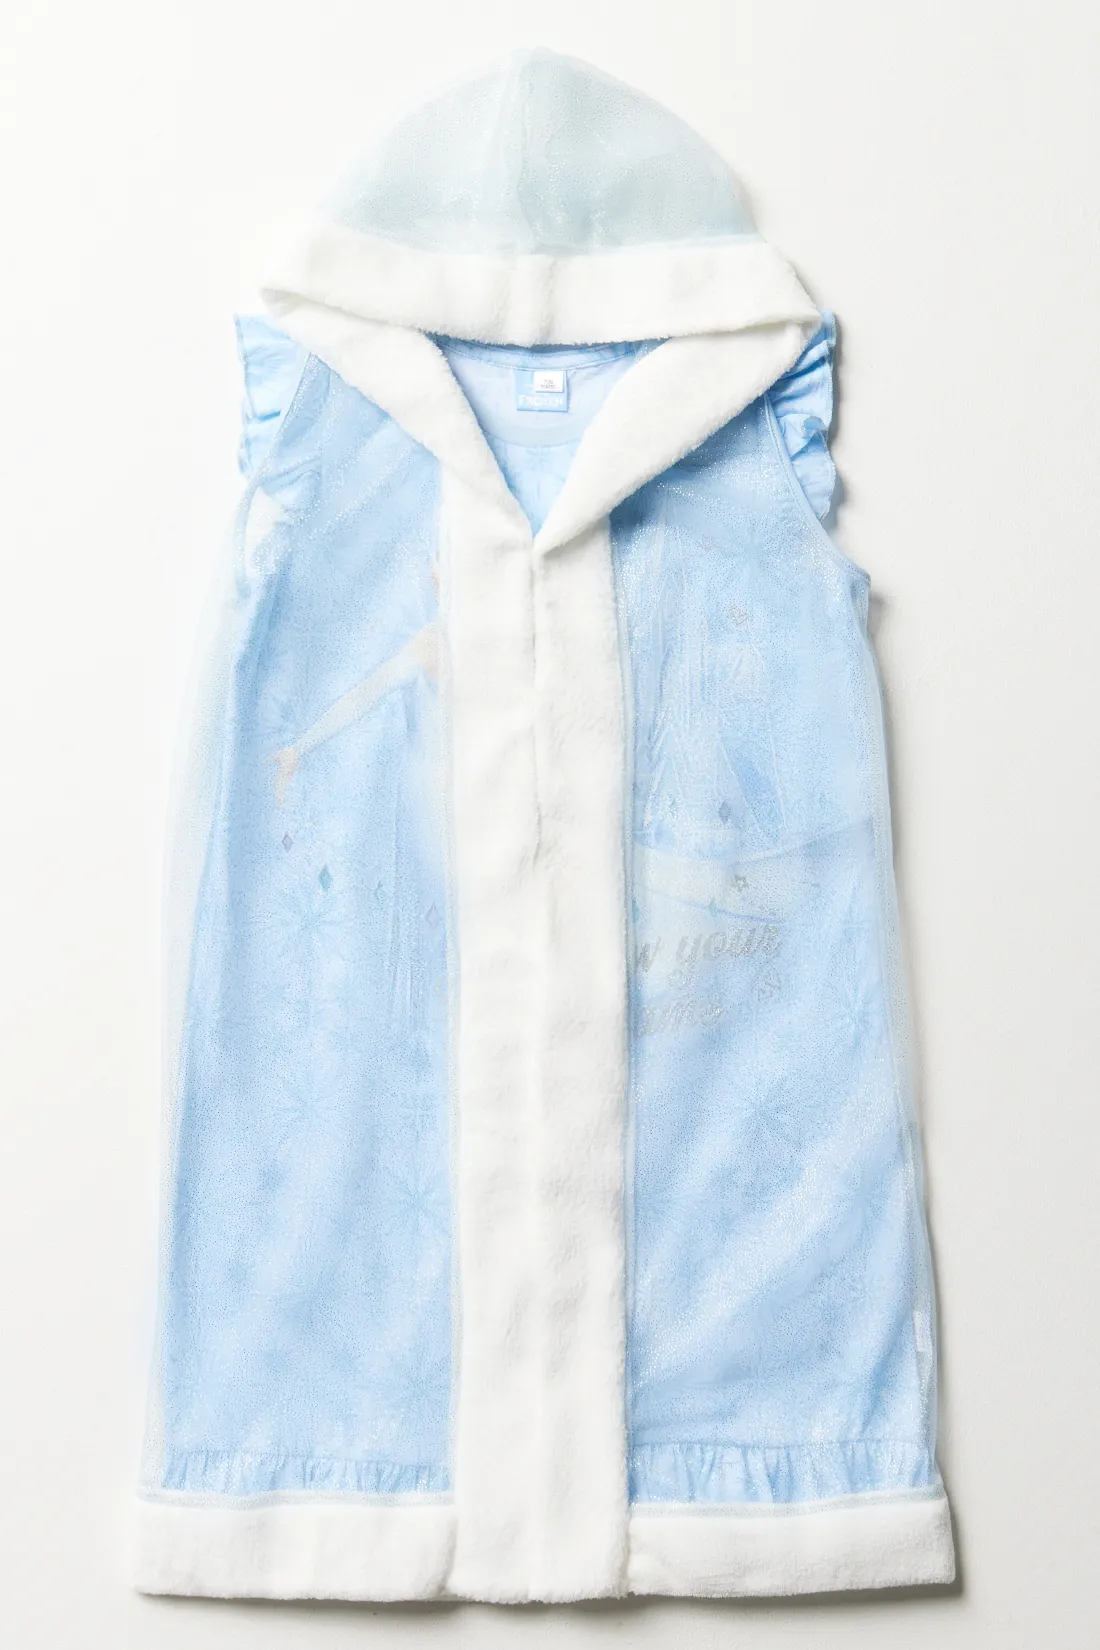 Frozen fancy nightshirt blue - Limited Edition CHARACTER KIDS Sleepwear